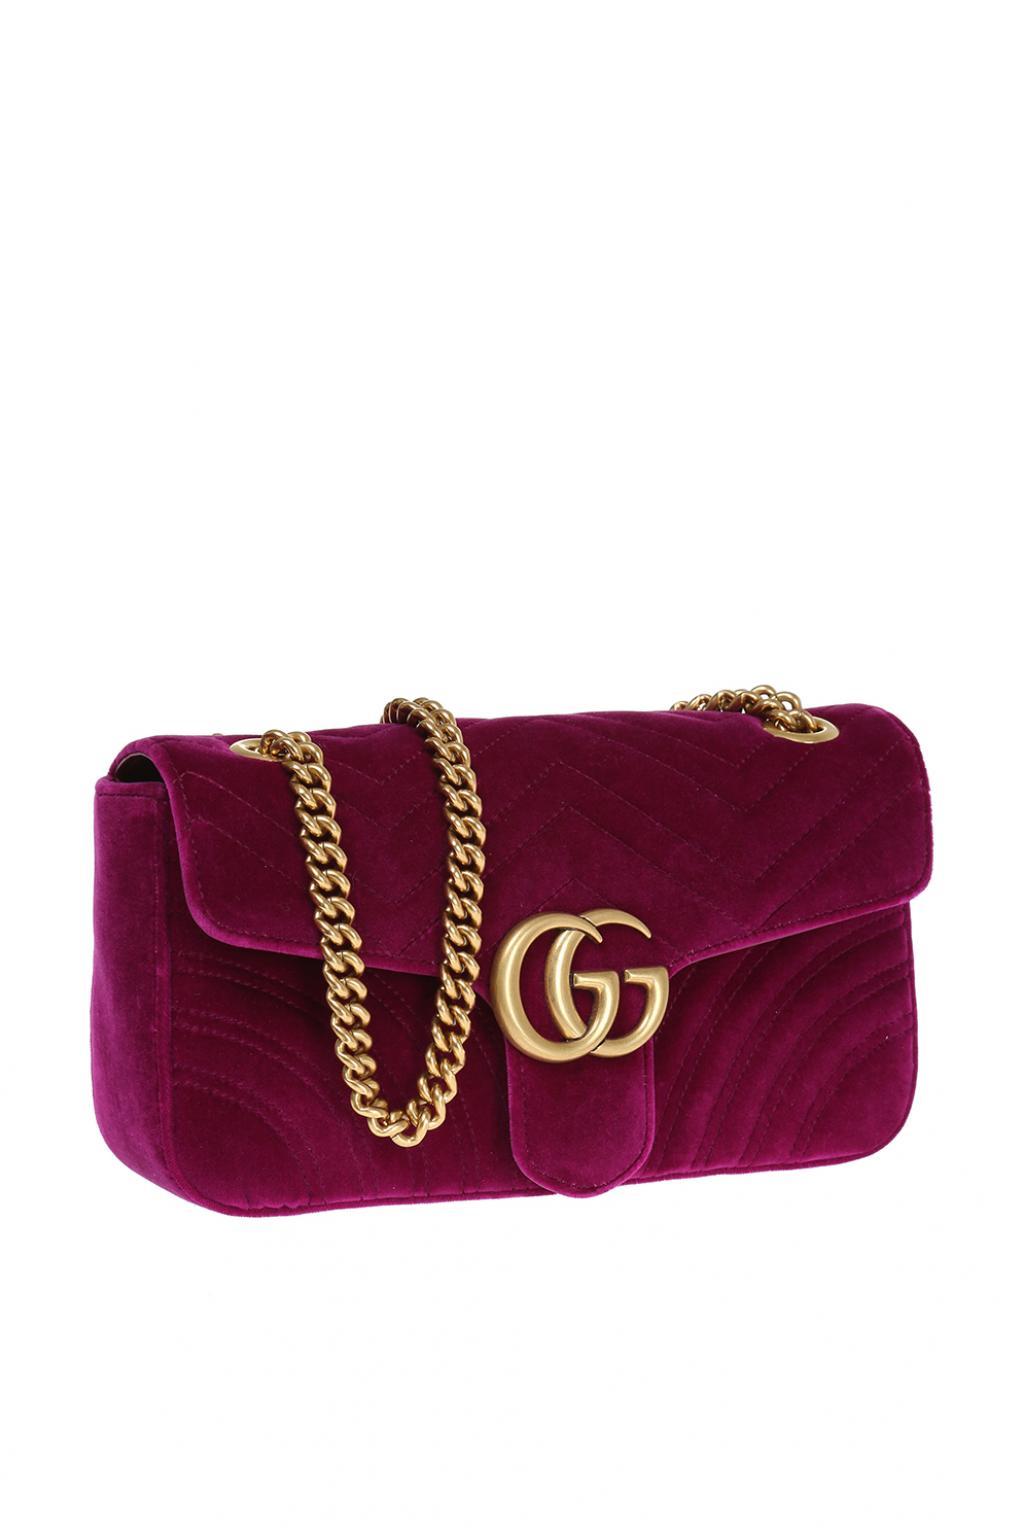 pink gucci bag velvet